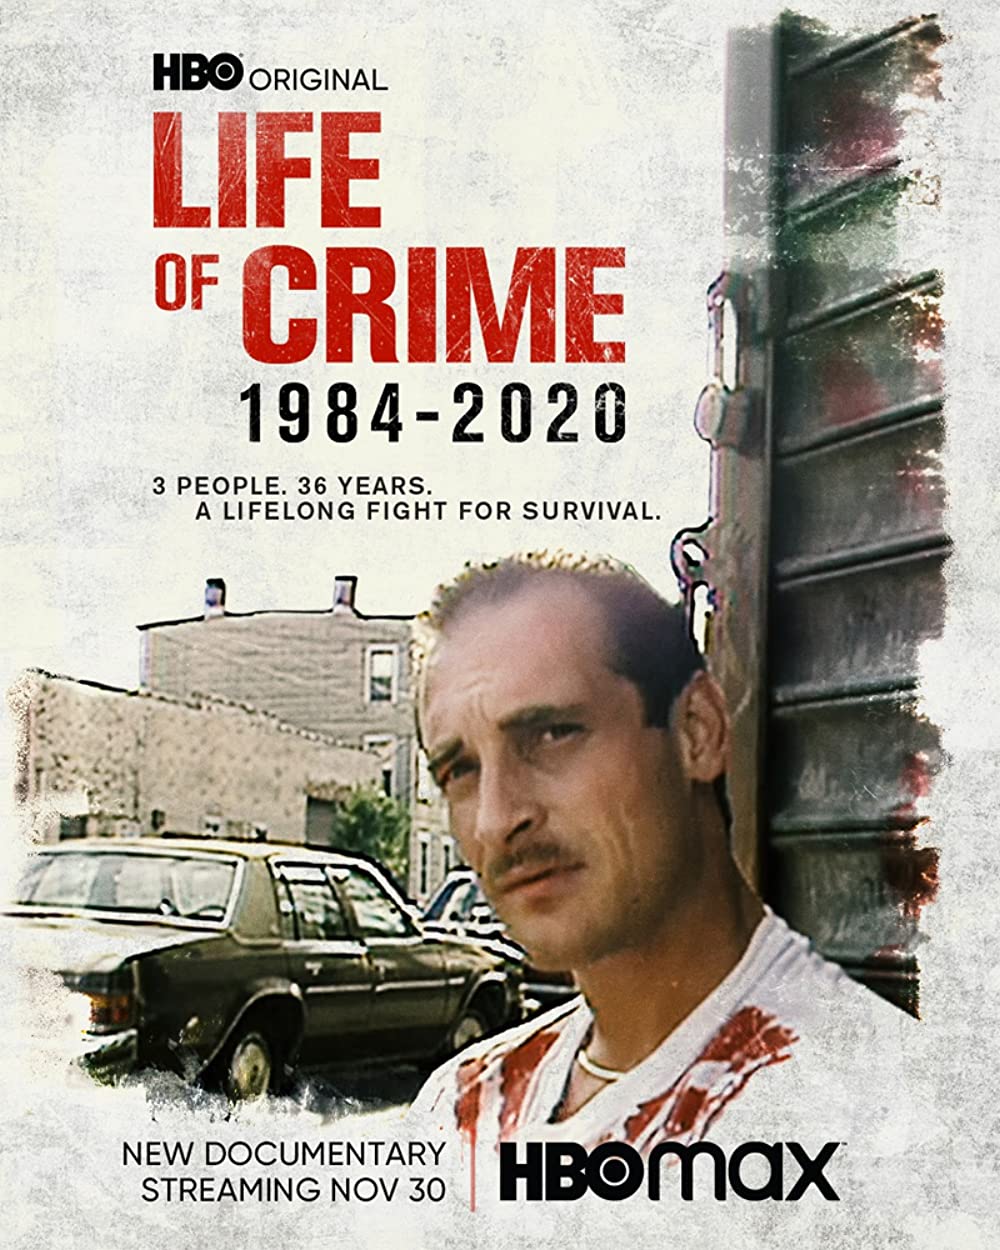 ดูหนังออนไลน์ฟรี Life of Crime 1984-2020 (2021) ไลฟ ออฟ ไครมฺ 1984-2020